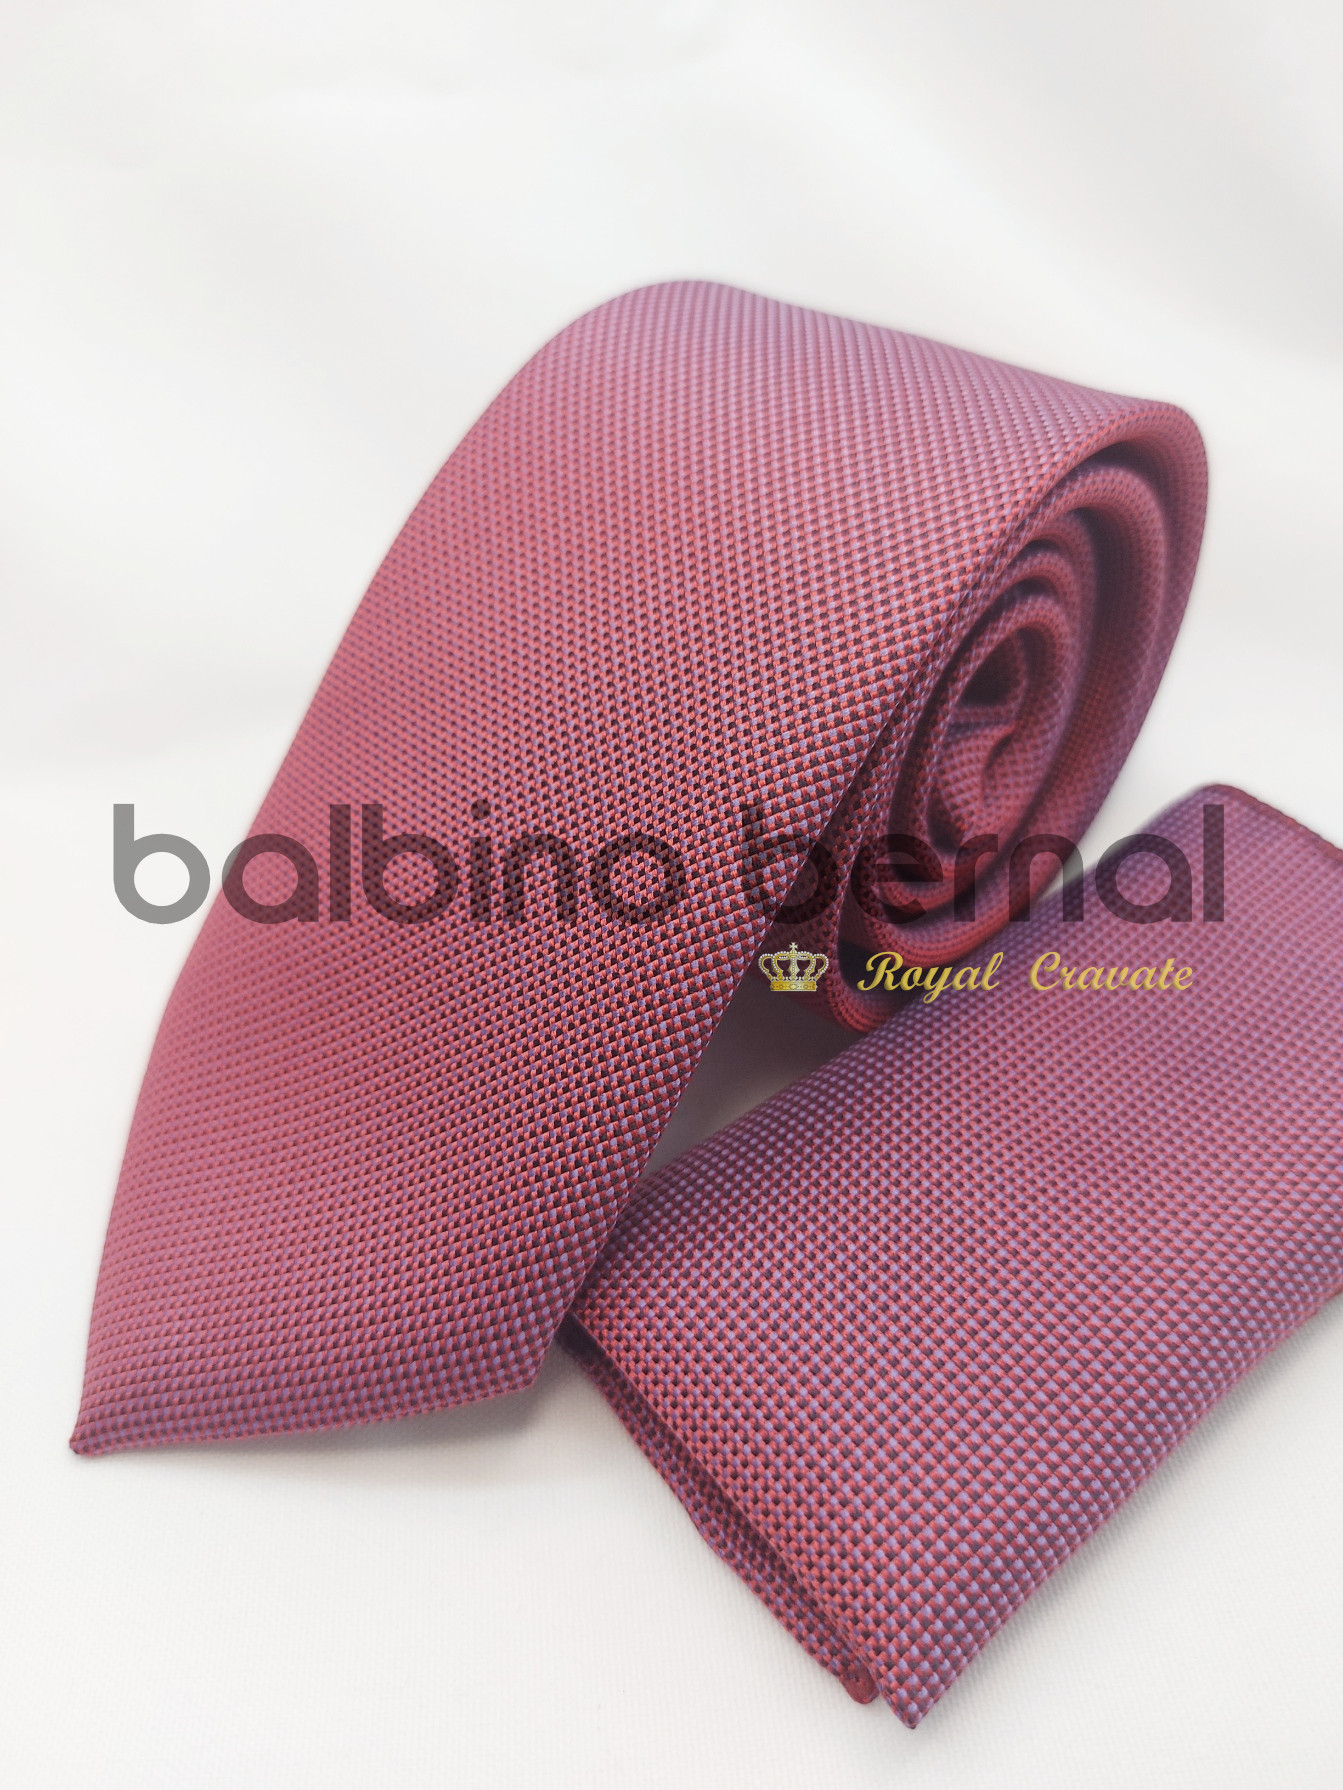 BB Roja y Azul – Balbino – Corbatas y Complementos en Sevilla